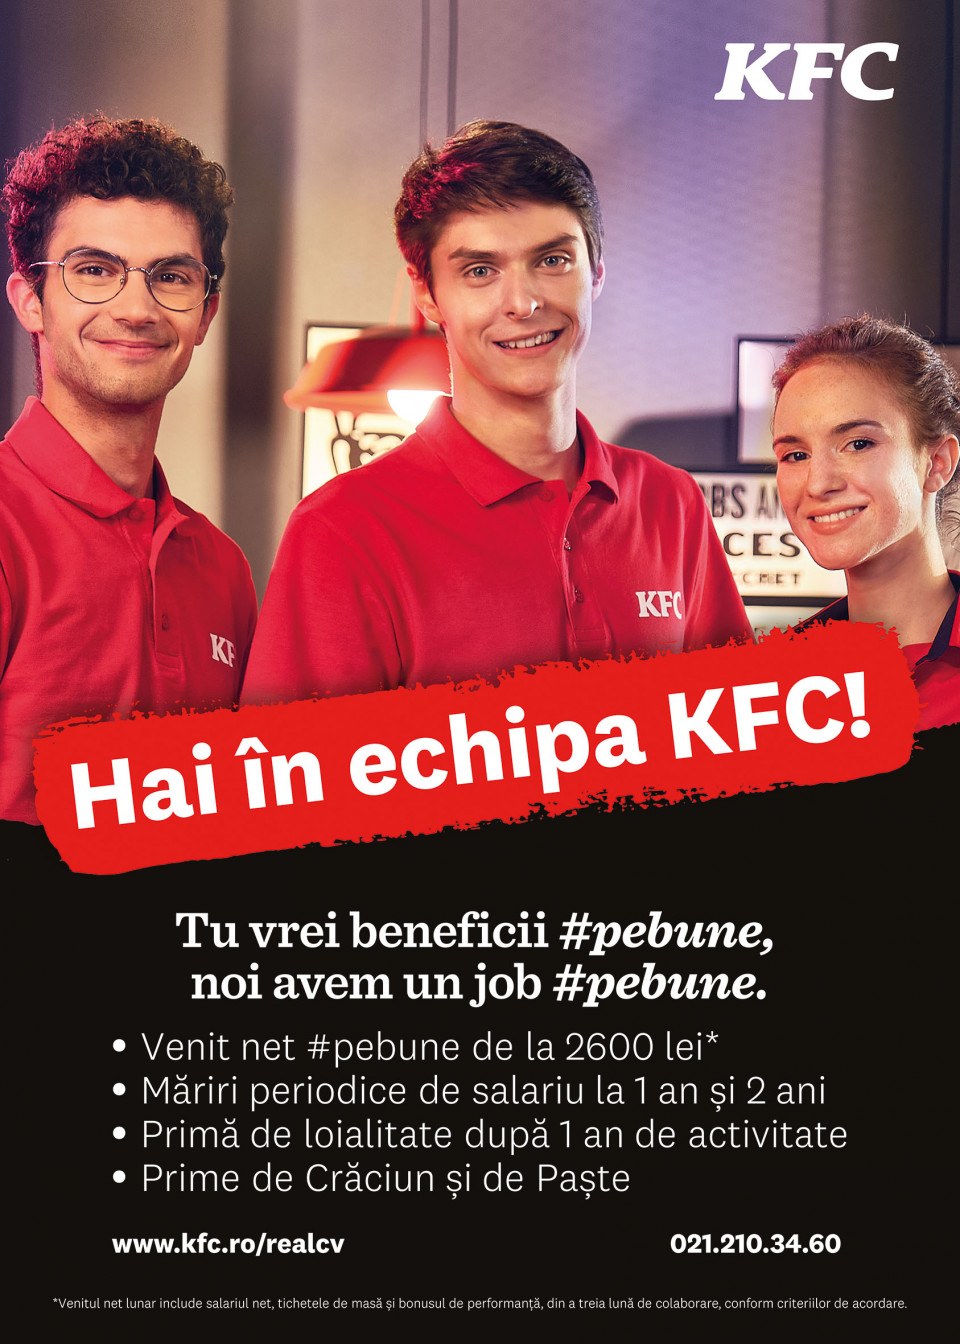 KFC cauta colegi! Hai intr-o echipa #pebune!